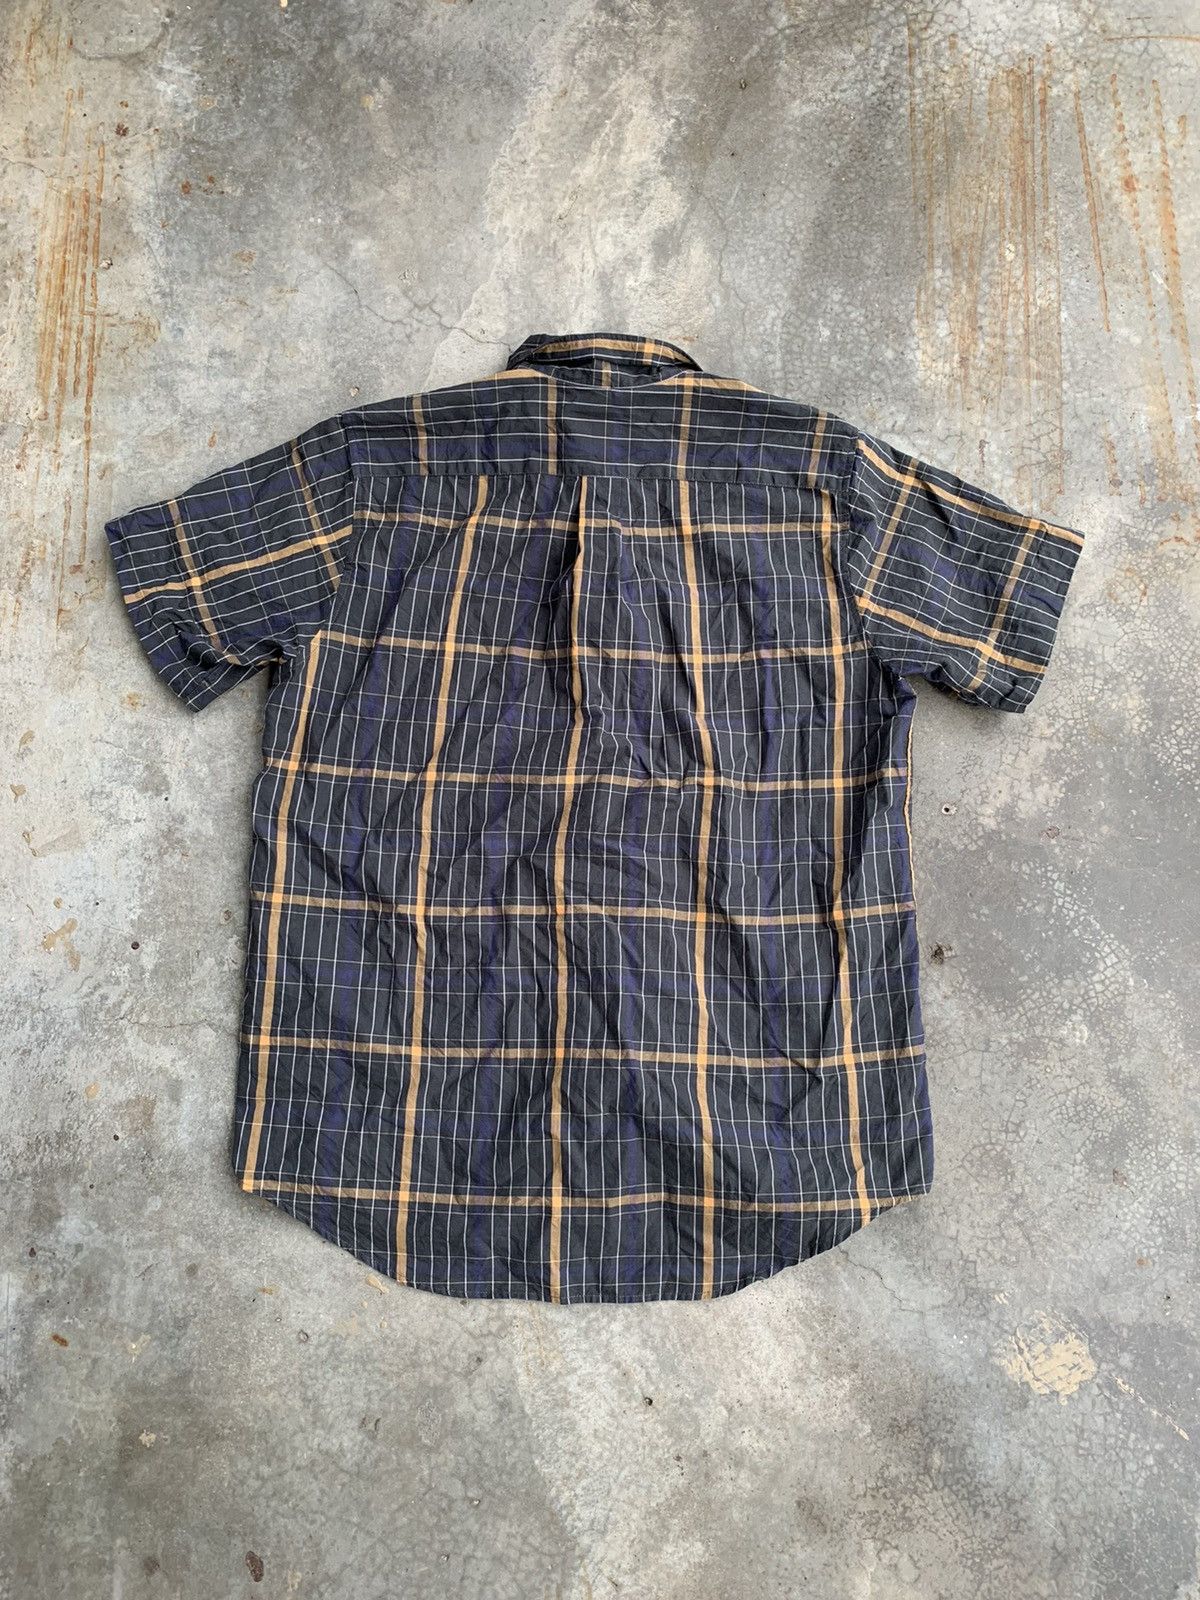 A.P.C Checkered Button Up Shirt - 2